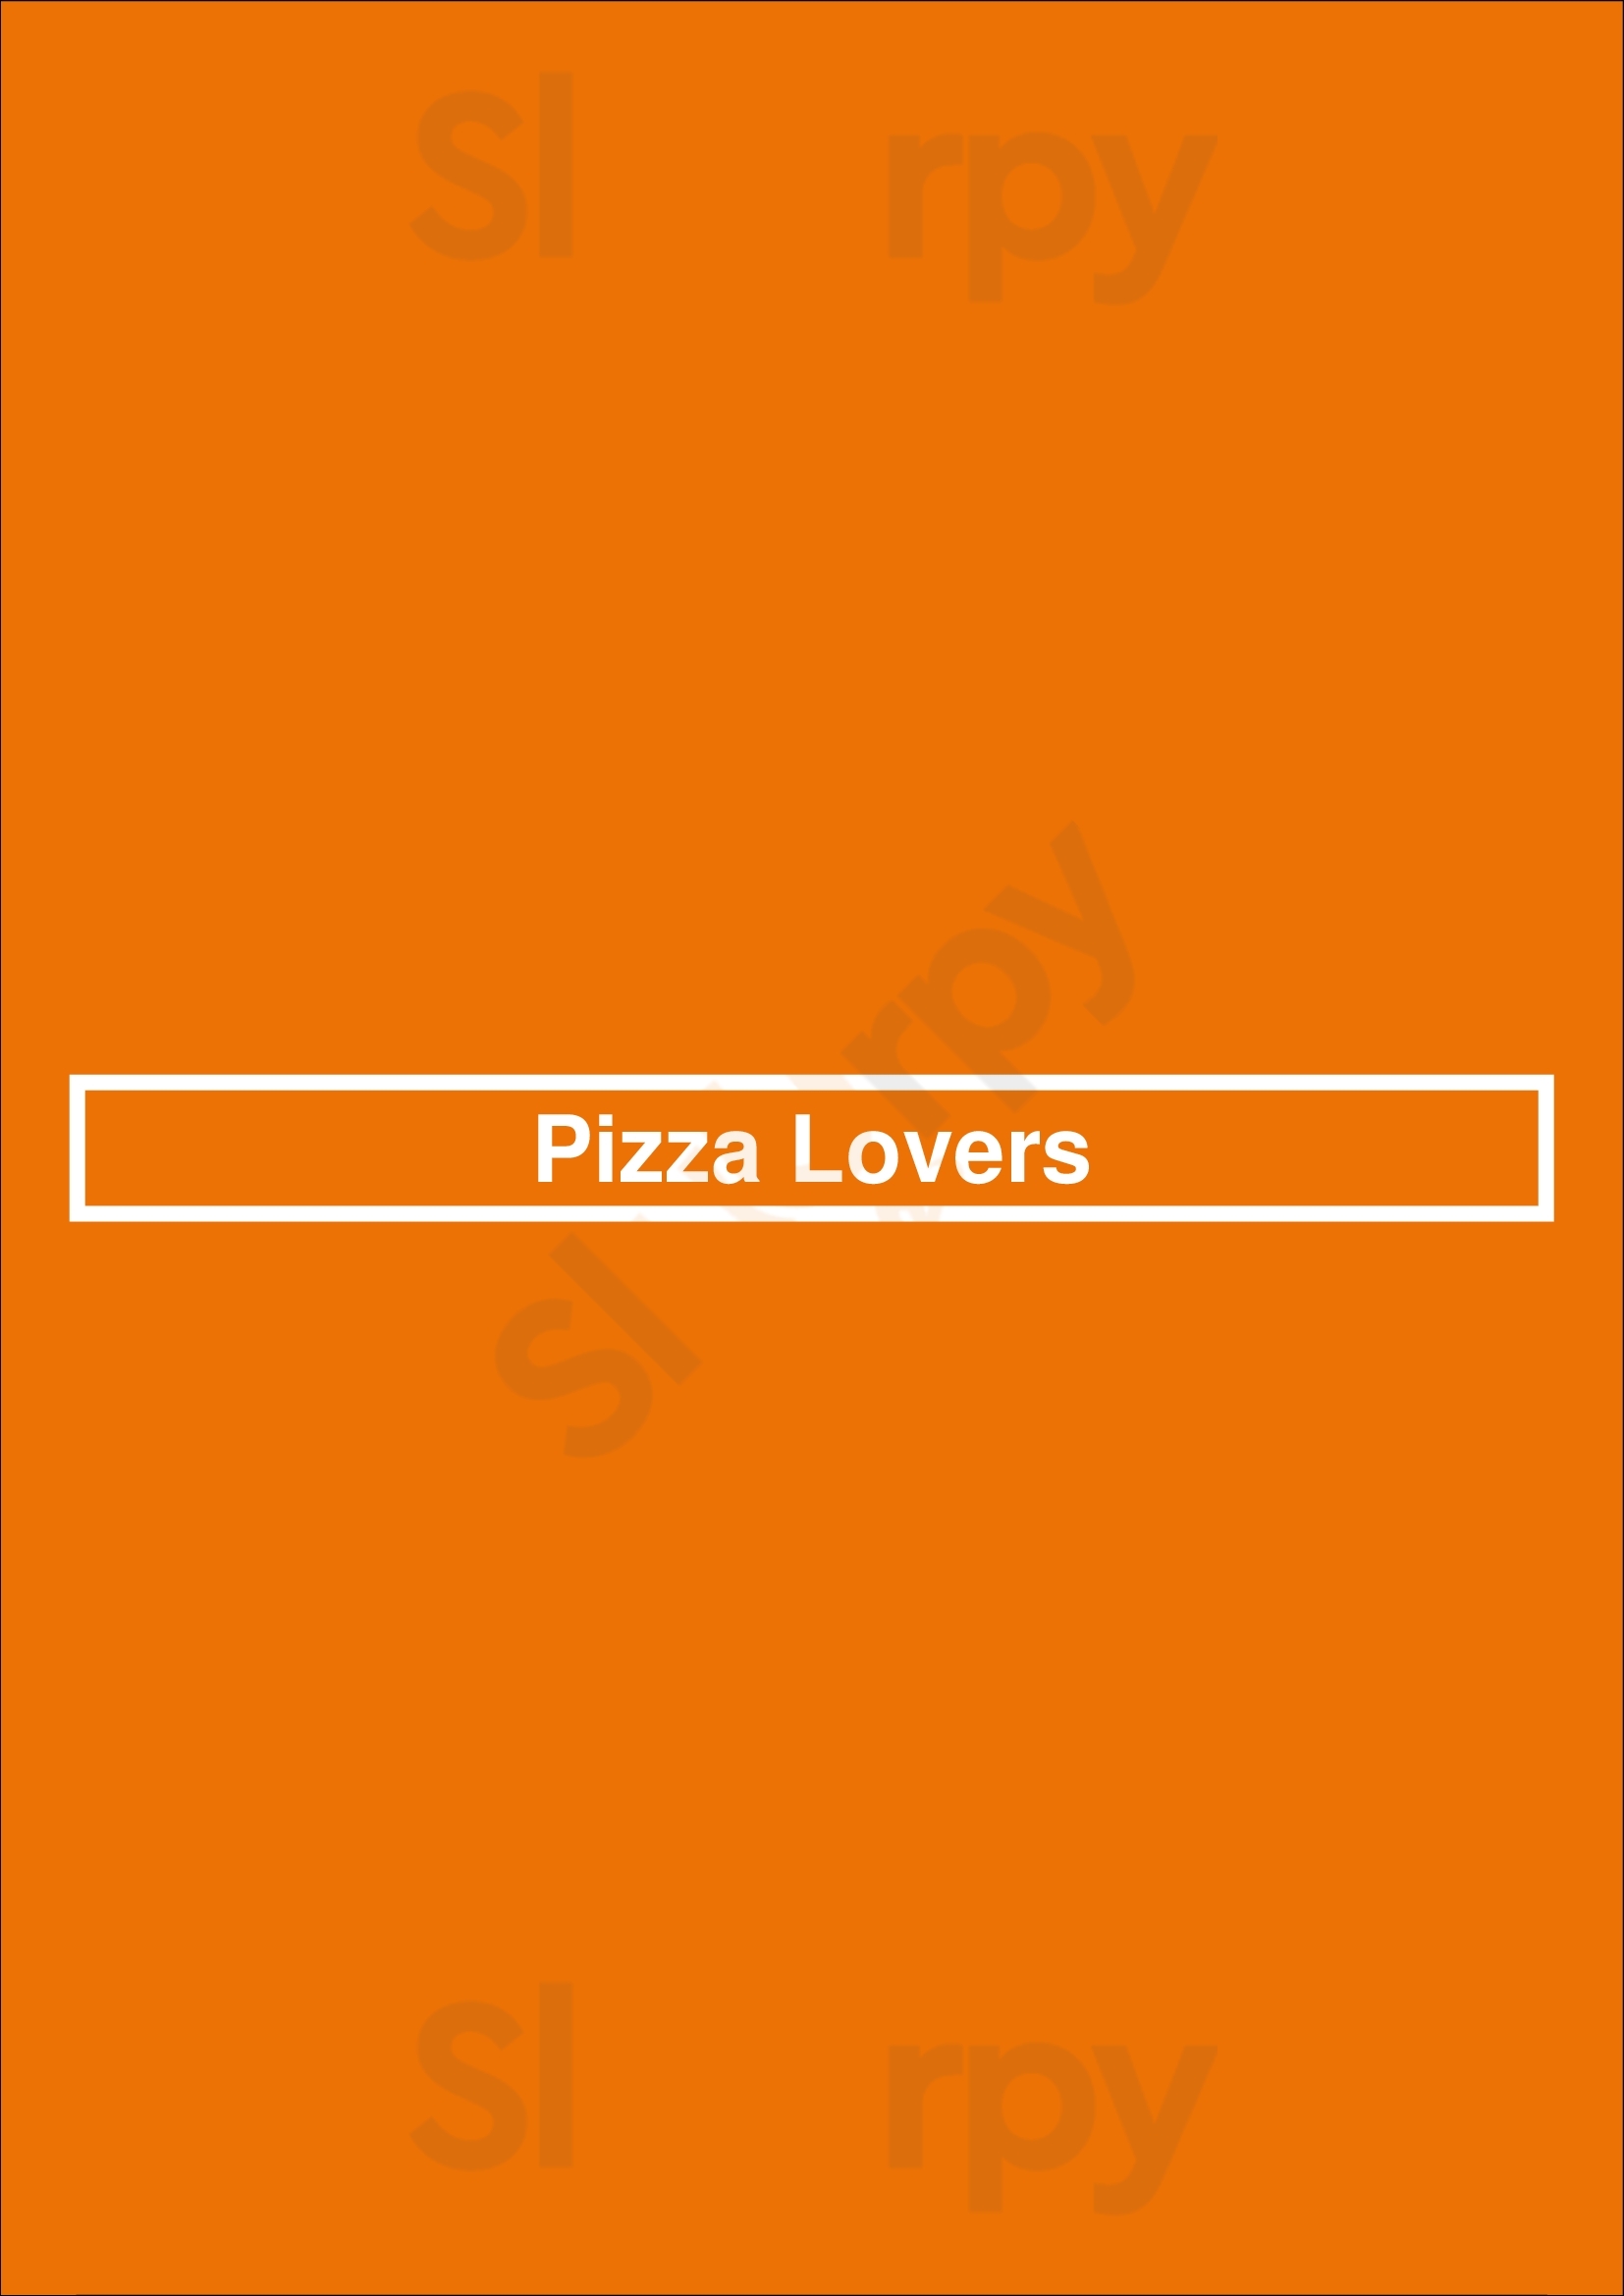 Pizza Lovers Ottawa Menu - 1